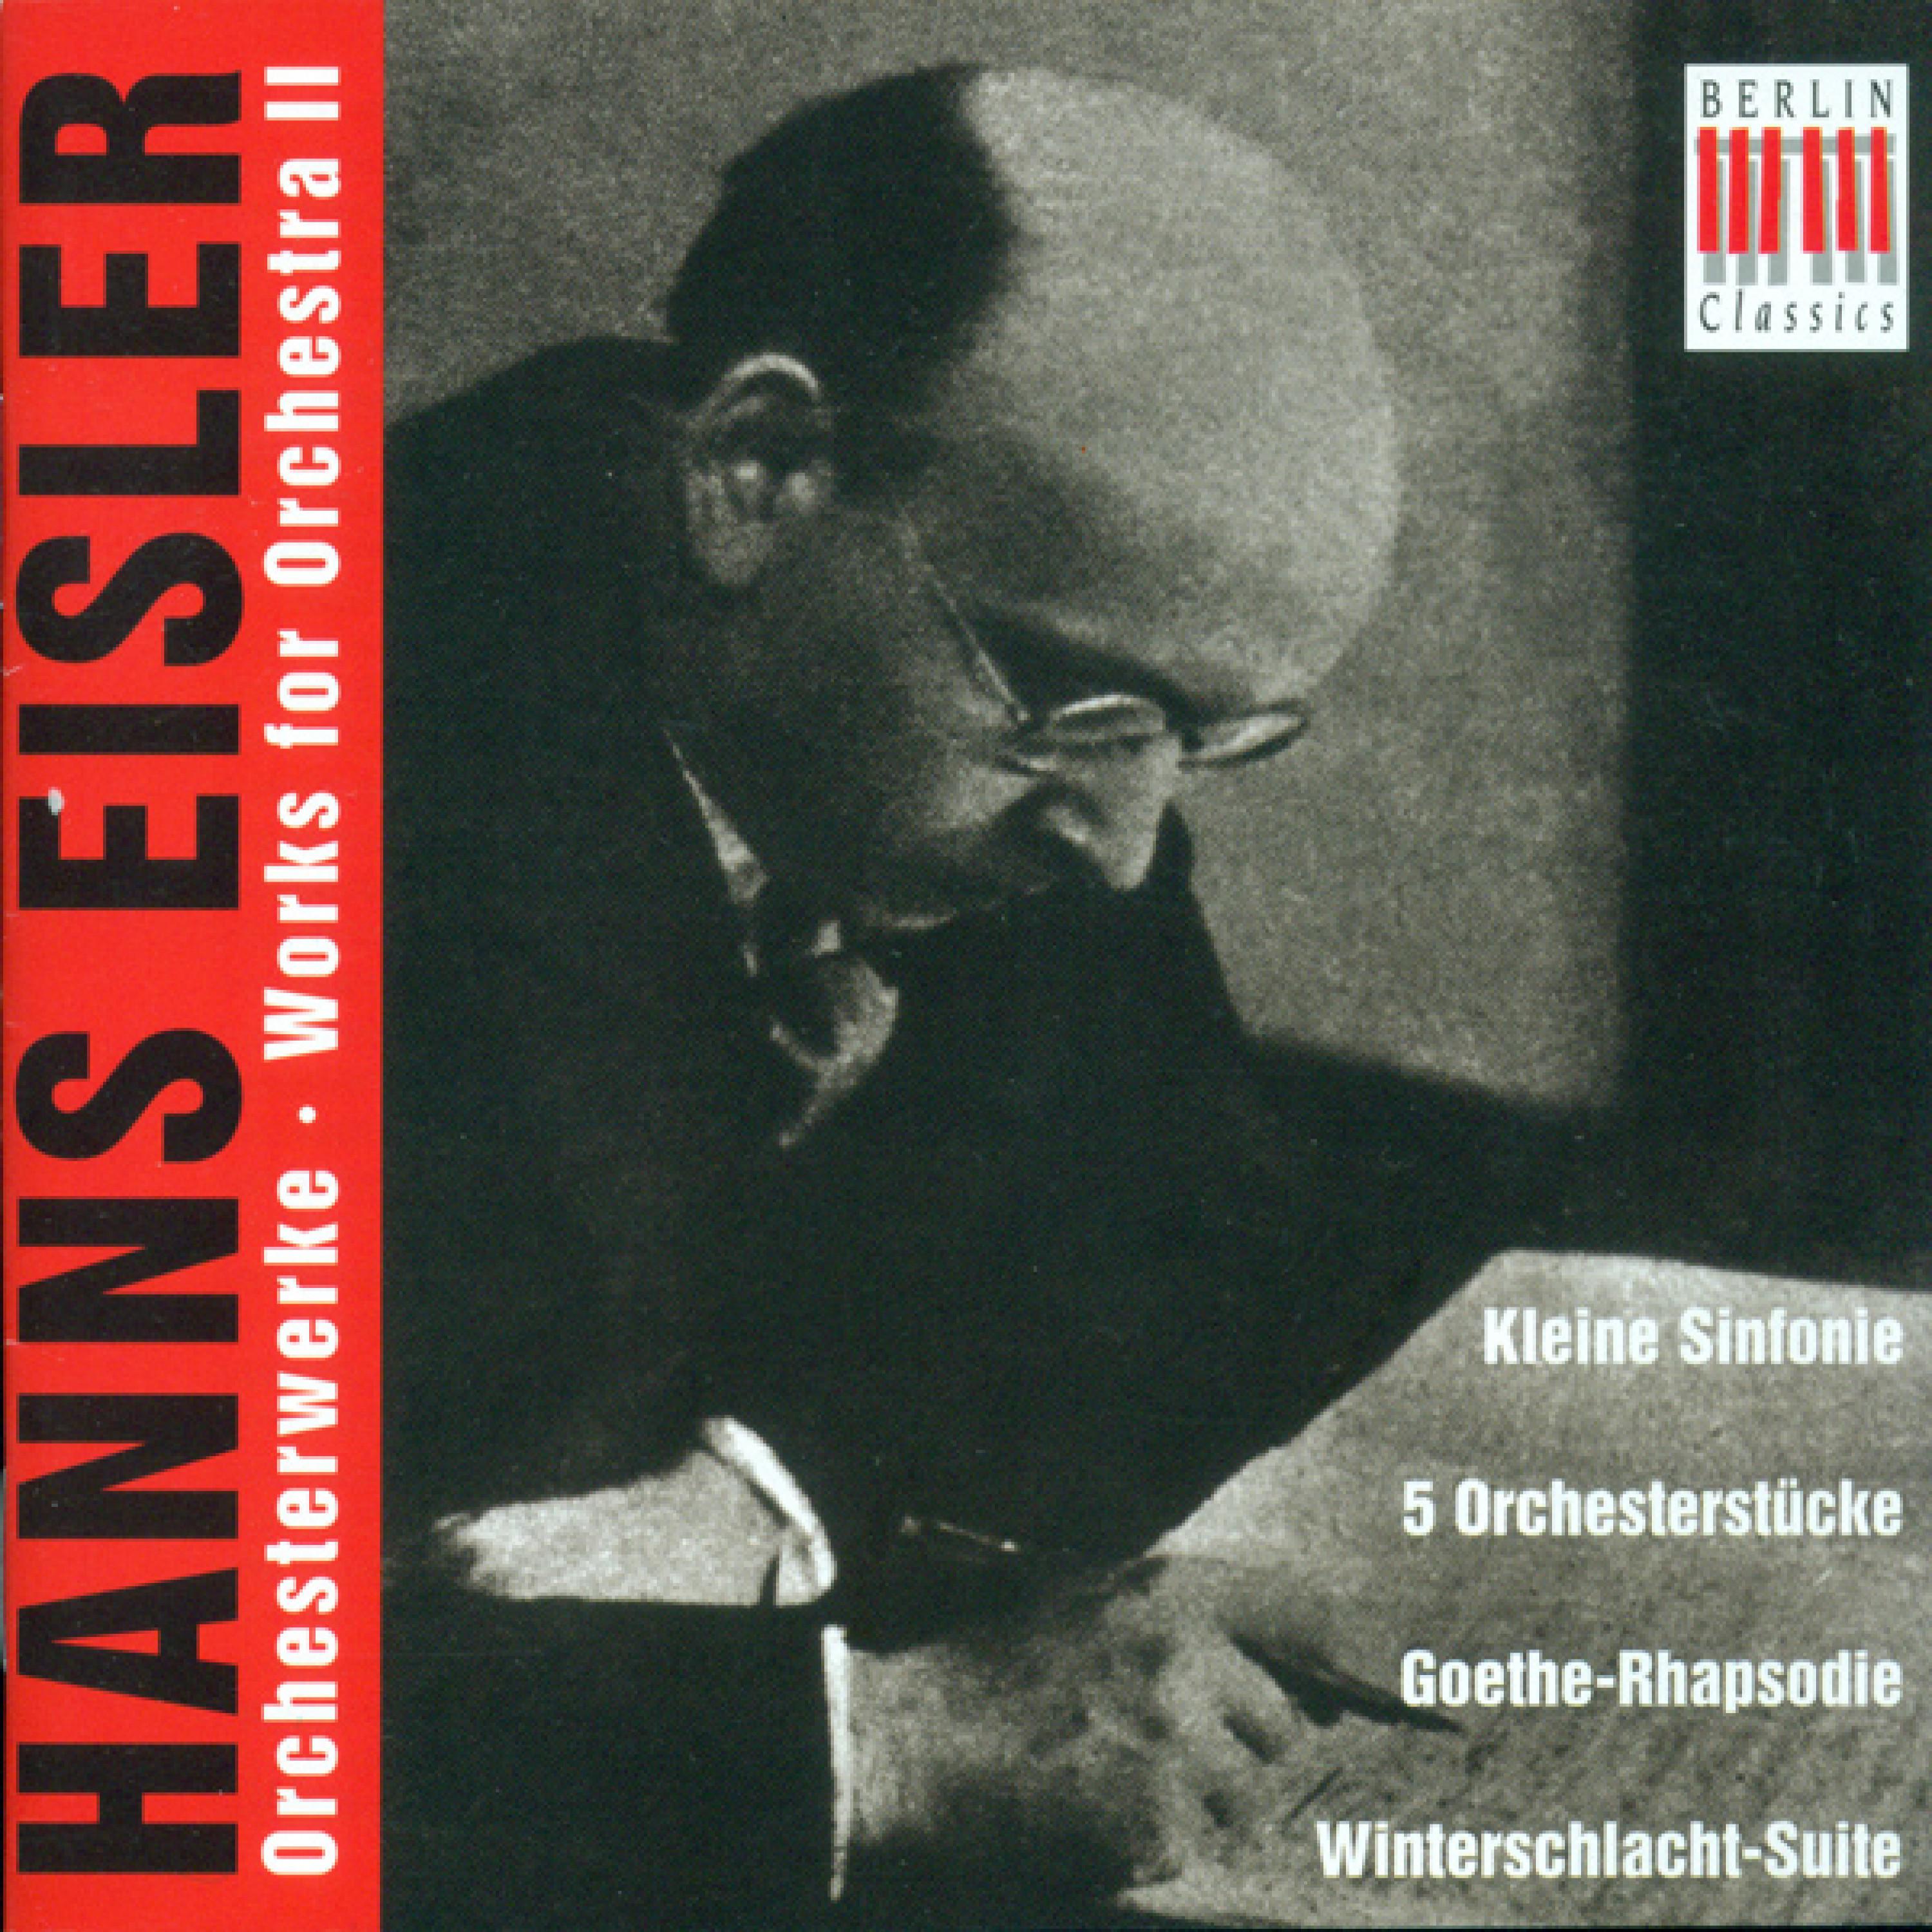 Hanns Eisler: Orchestral Music, Vol. 2 - Kleine Sinfonie / 5 Orchestral Pieces / Scherzo / Rhapsodie / Winterschlacht-Suite / Wilhelm Tell